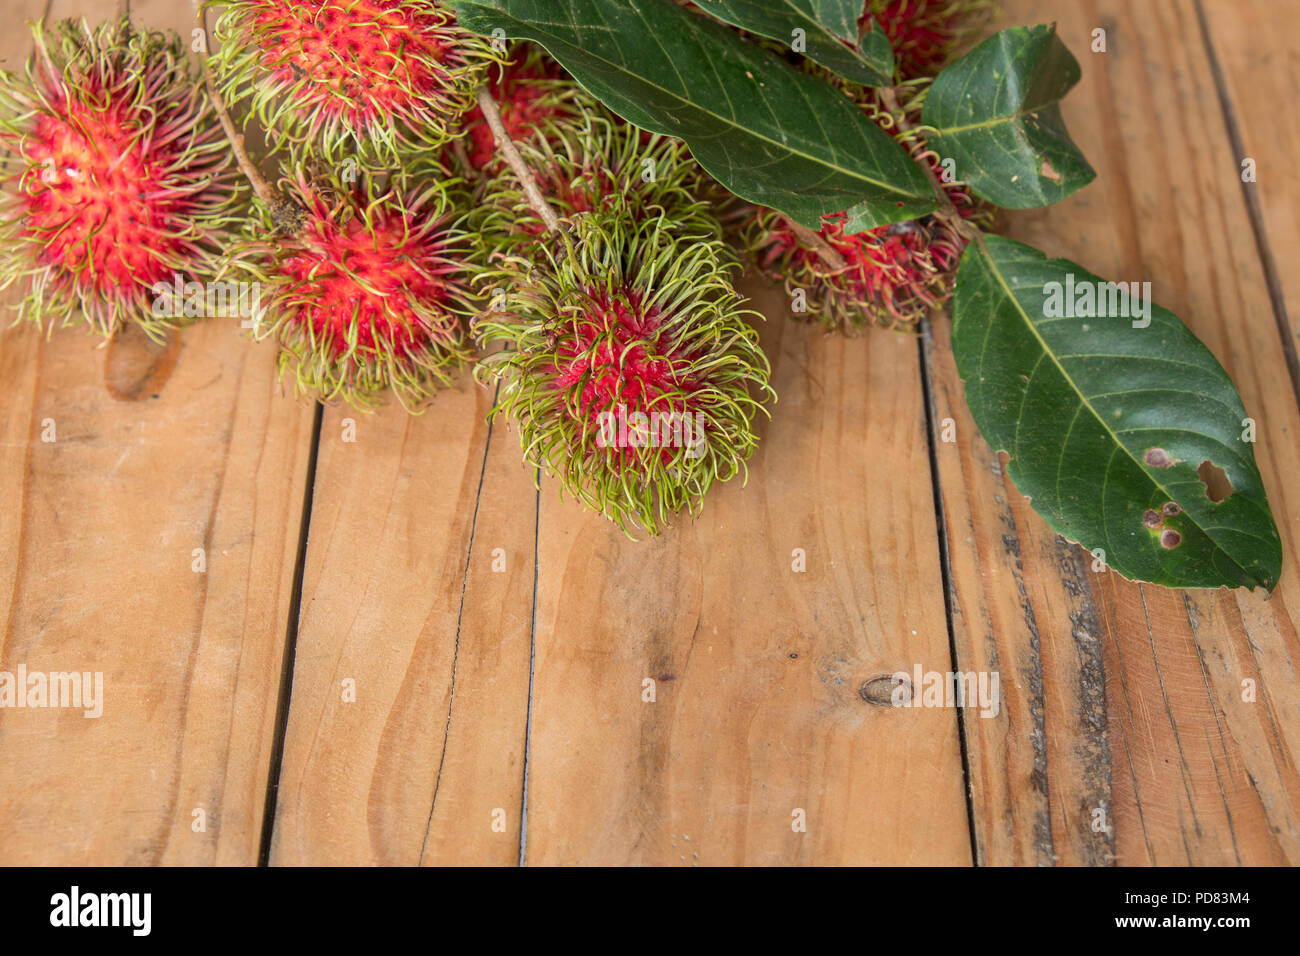 Roten rambutan Nephelium lappaceum auf broun Board. Obst tropischen Baum der Familie Sapindaceae, beheimatet in Südostasien, in vielen Ländern angebaut Stockfoto